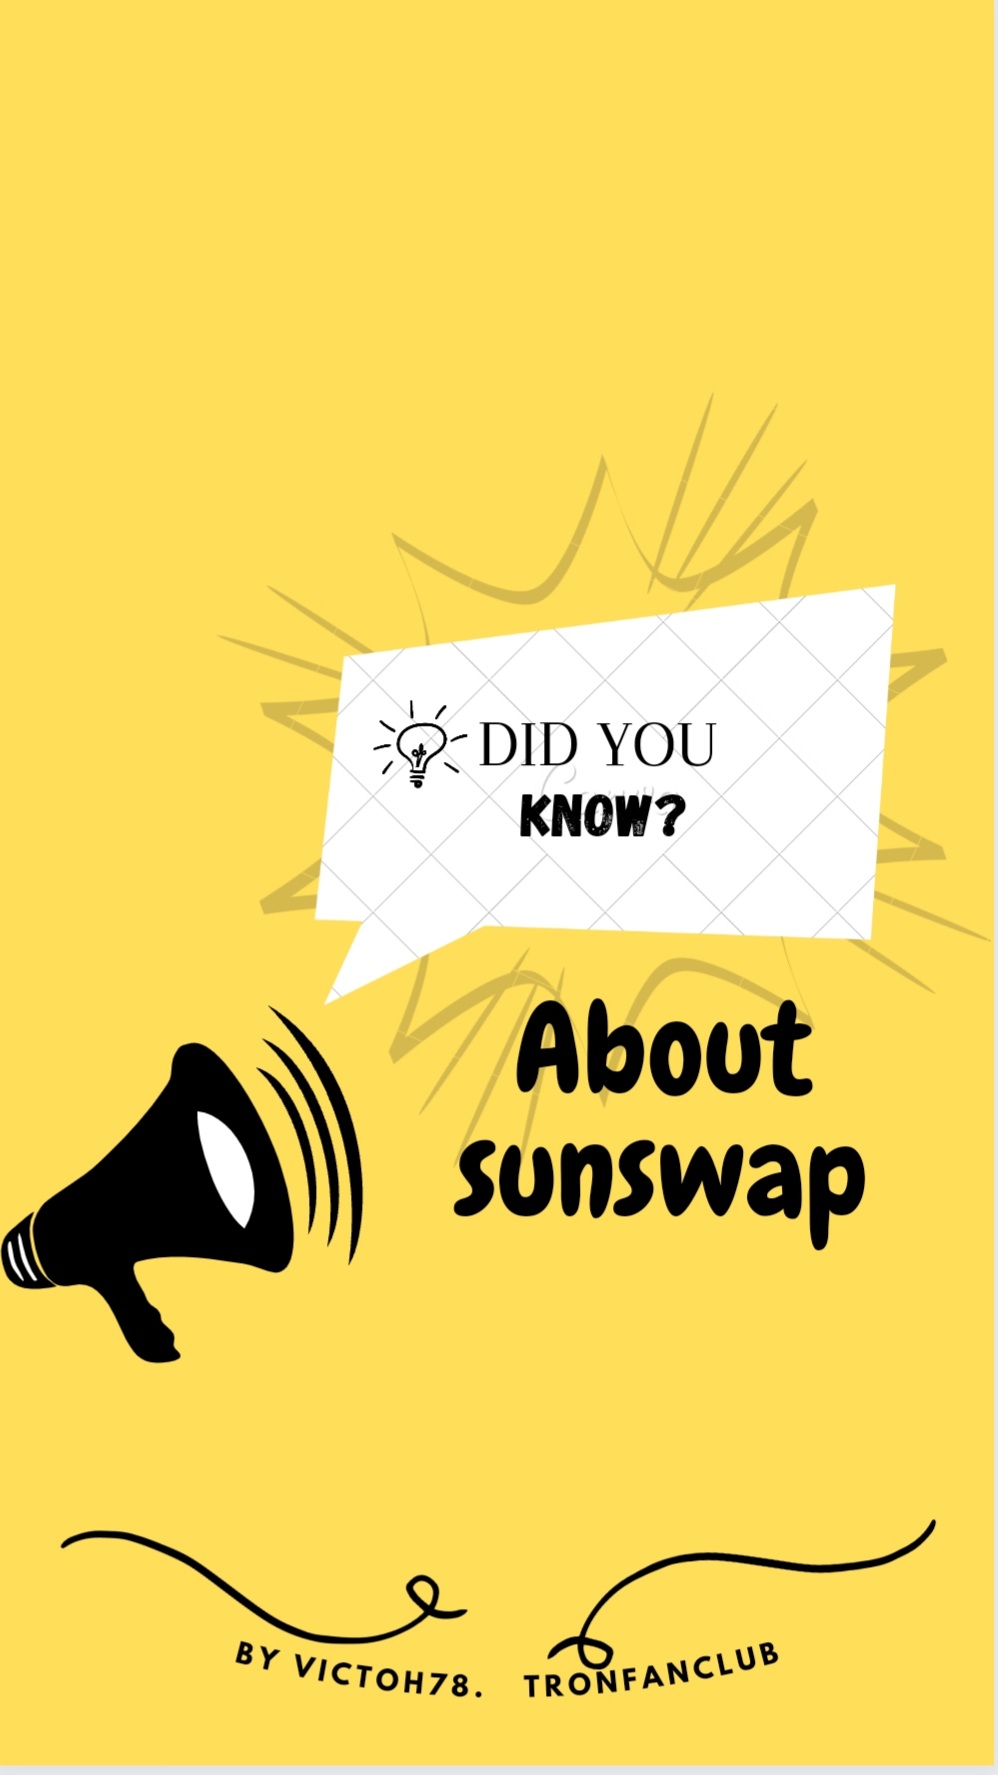 Sunswap news